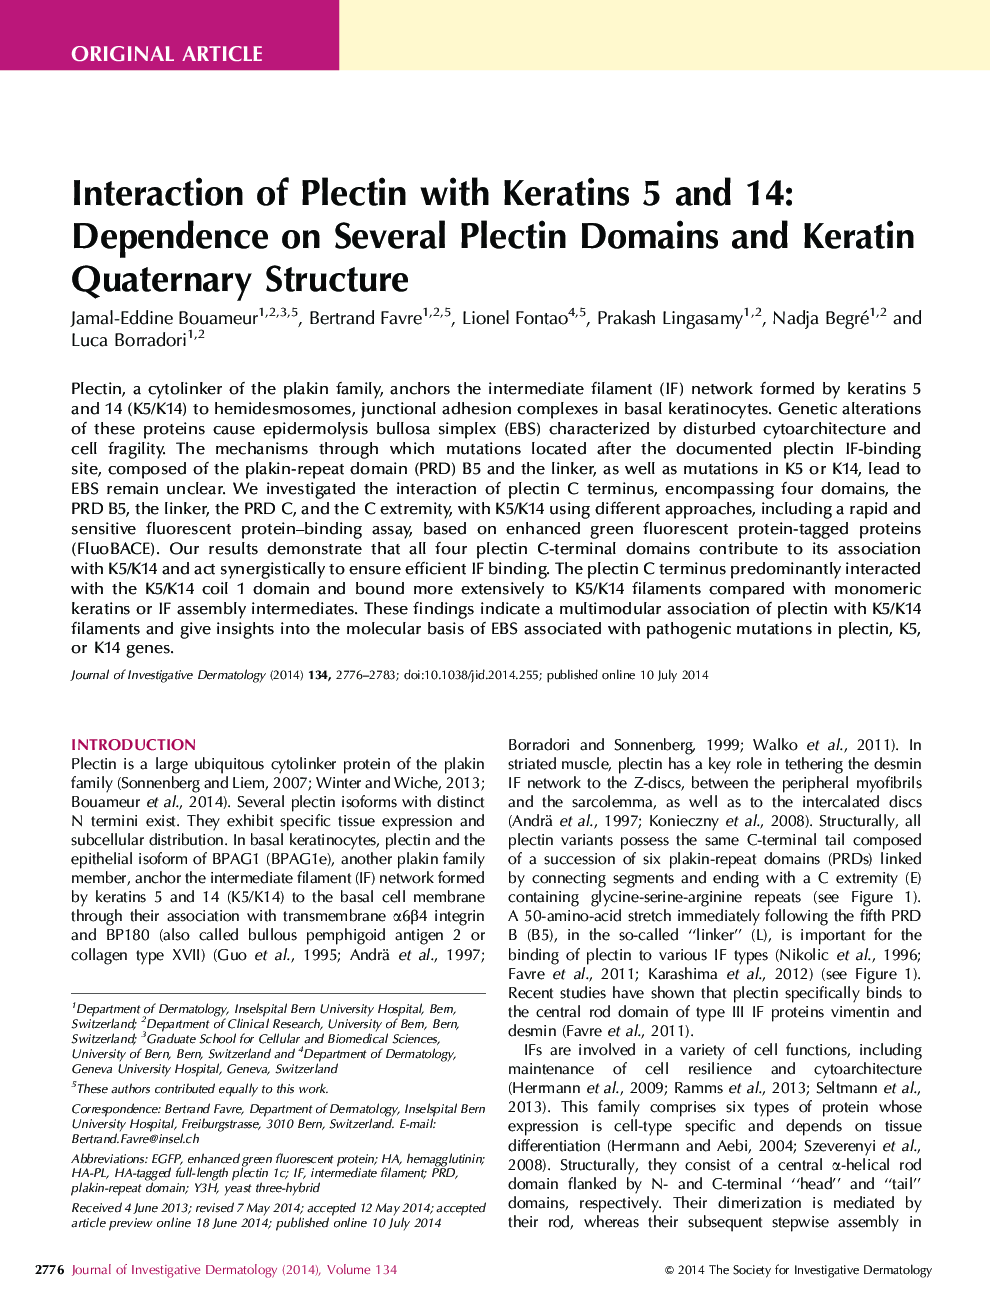 تعامل پلاتین با کراتین 5 و 14: وابستگی به دامنه های مختلف پلاتین و ساختار کواترنر کراتین 